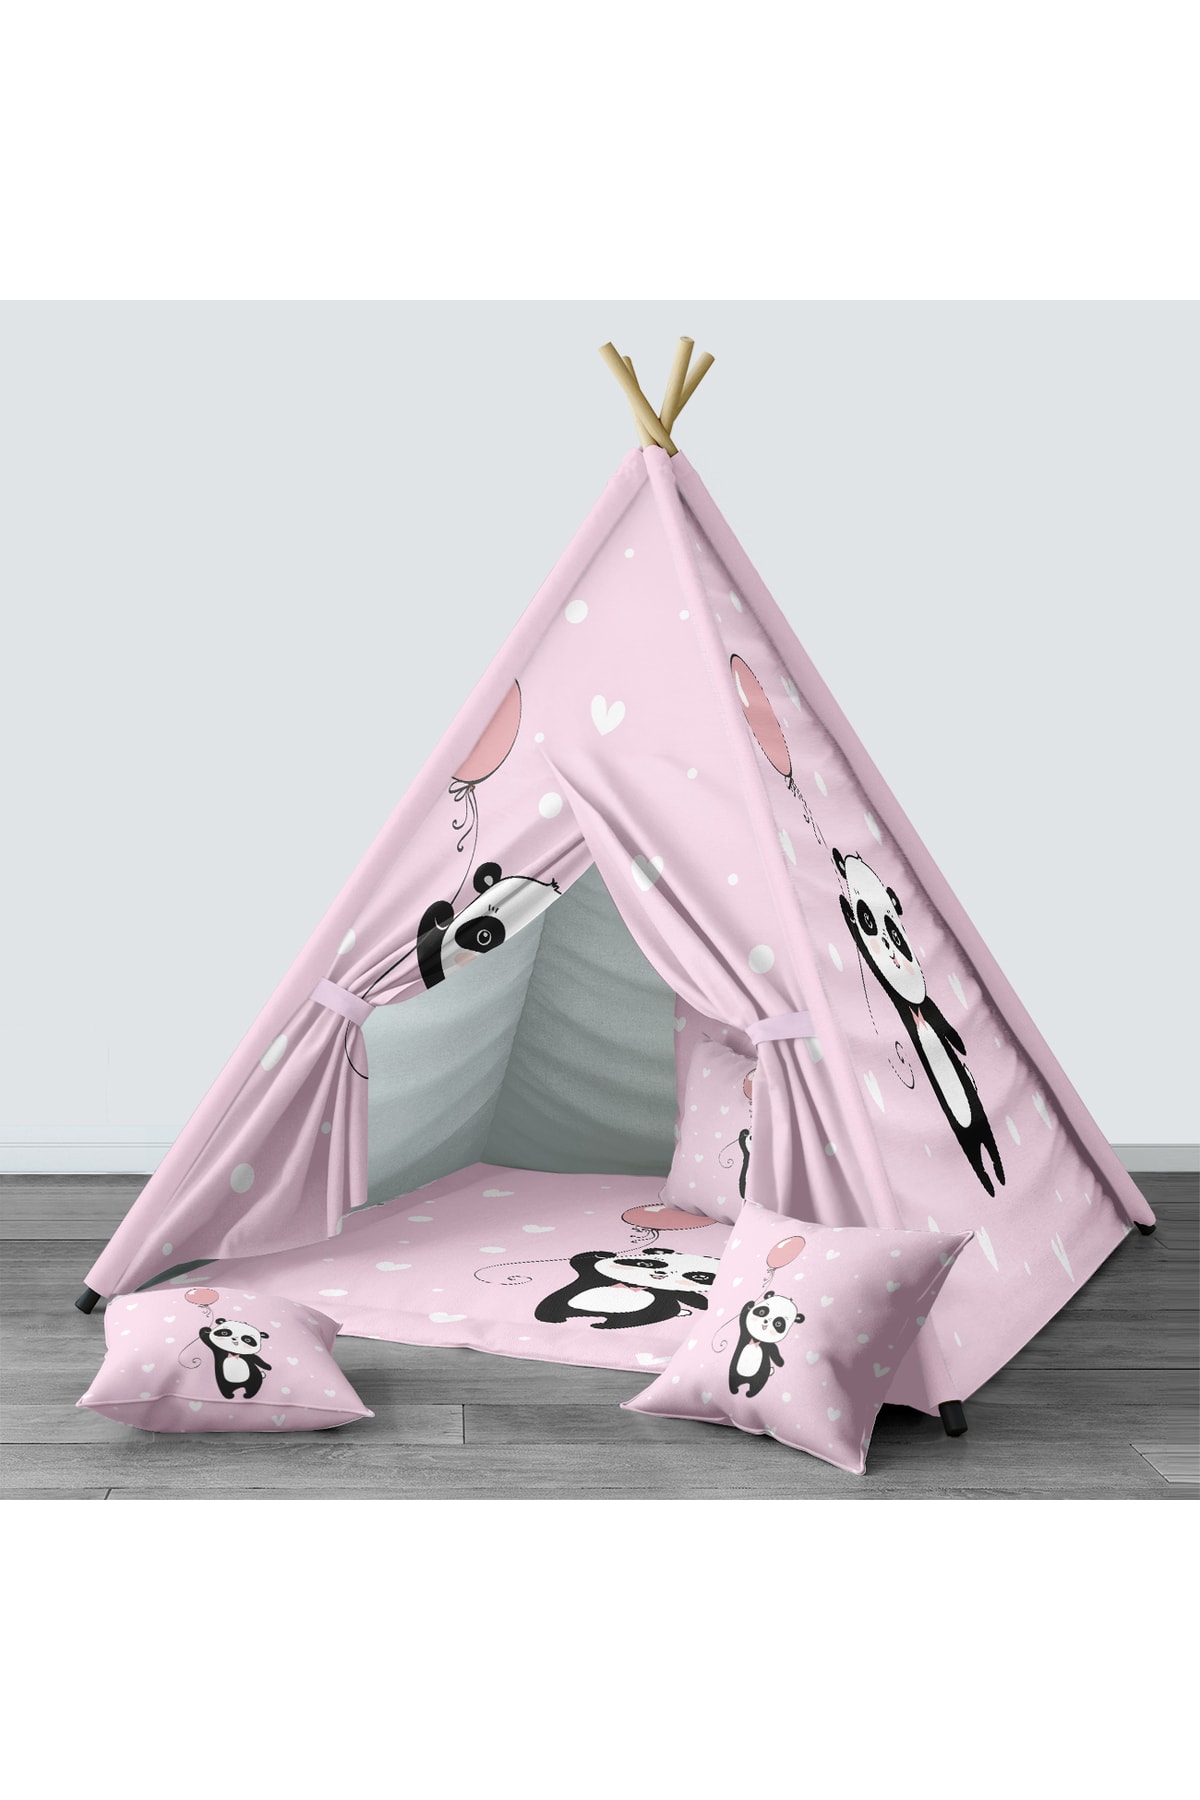 Tinybabyconcept Çocuk Odası Kızıldereli Çadır Katlanabilir Çocuk Oyun Çadırı Oyun Evi Panda Desenli 018